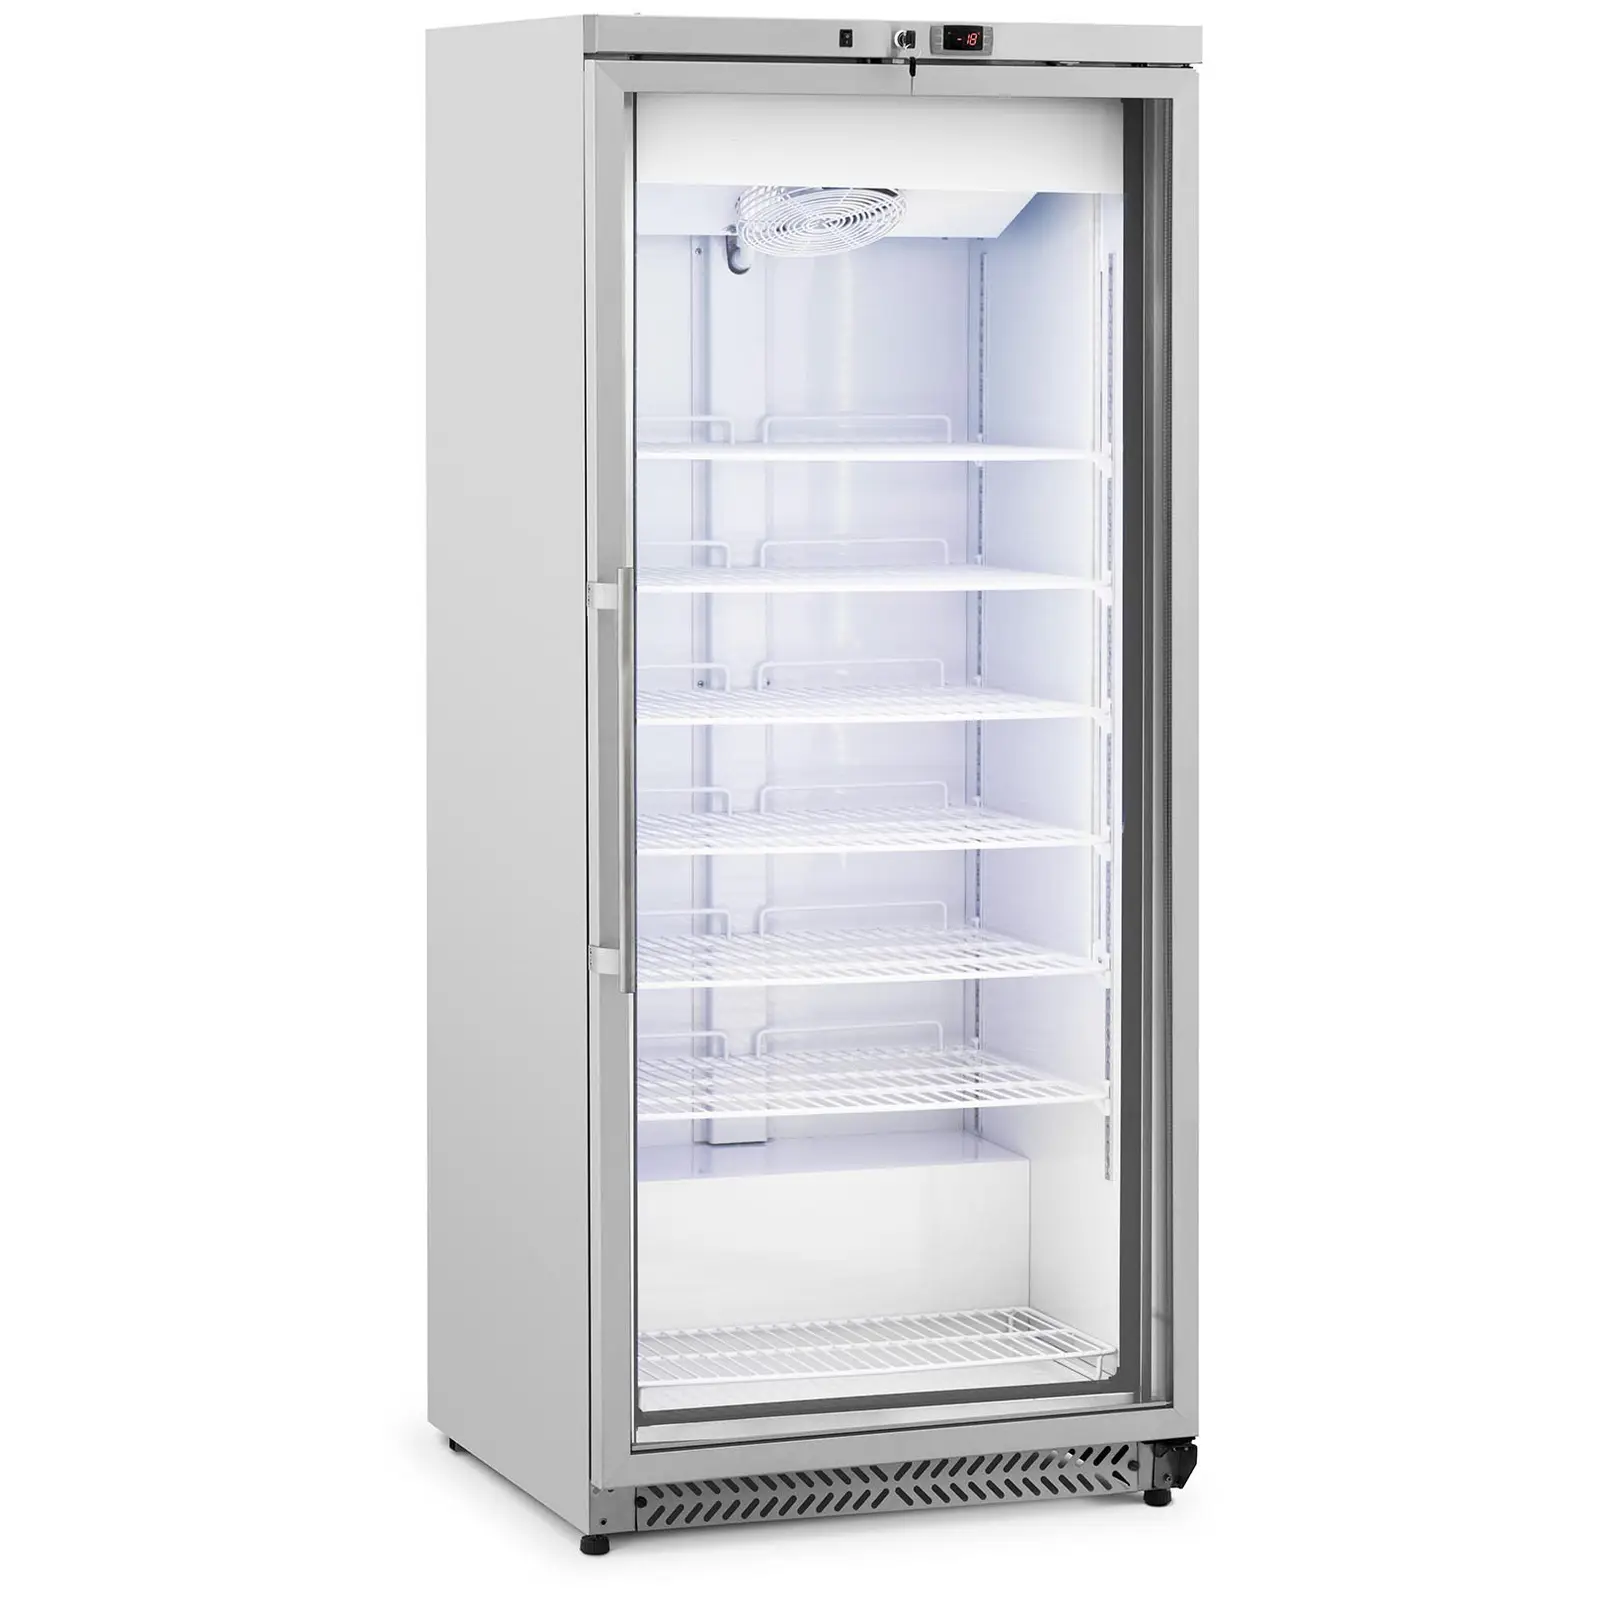 Arca congeladora de gaveta - 580 l - Royal Catering - porta de vidro - prata - refrigerante R290